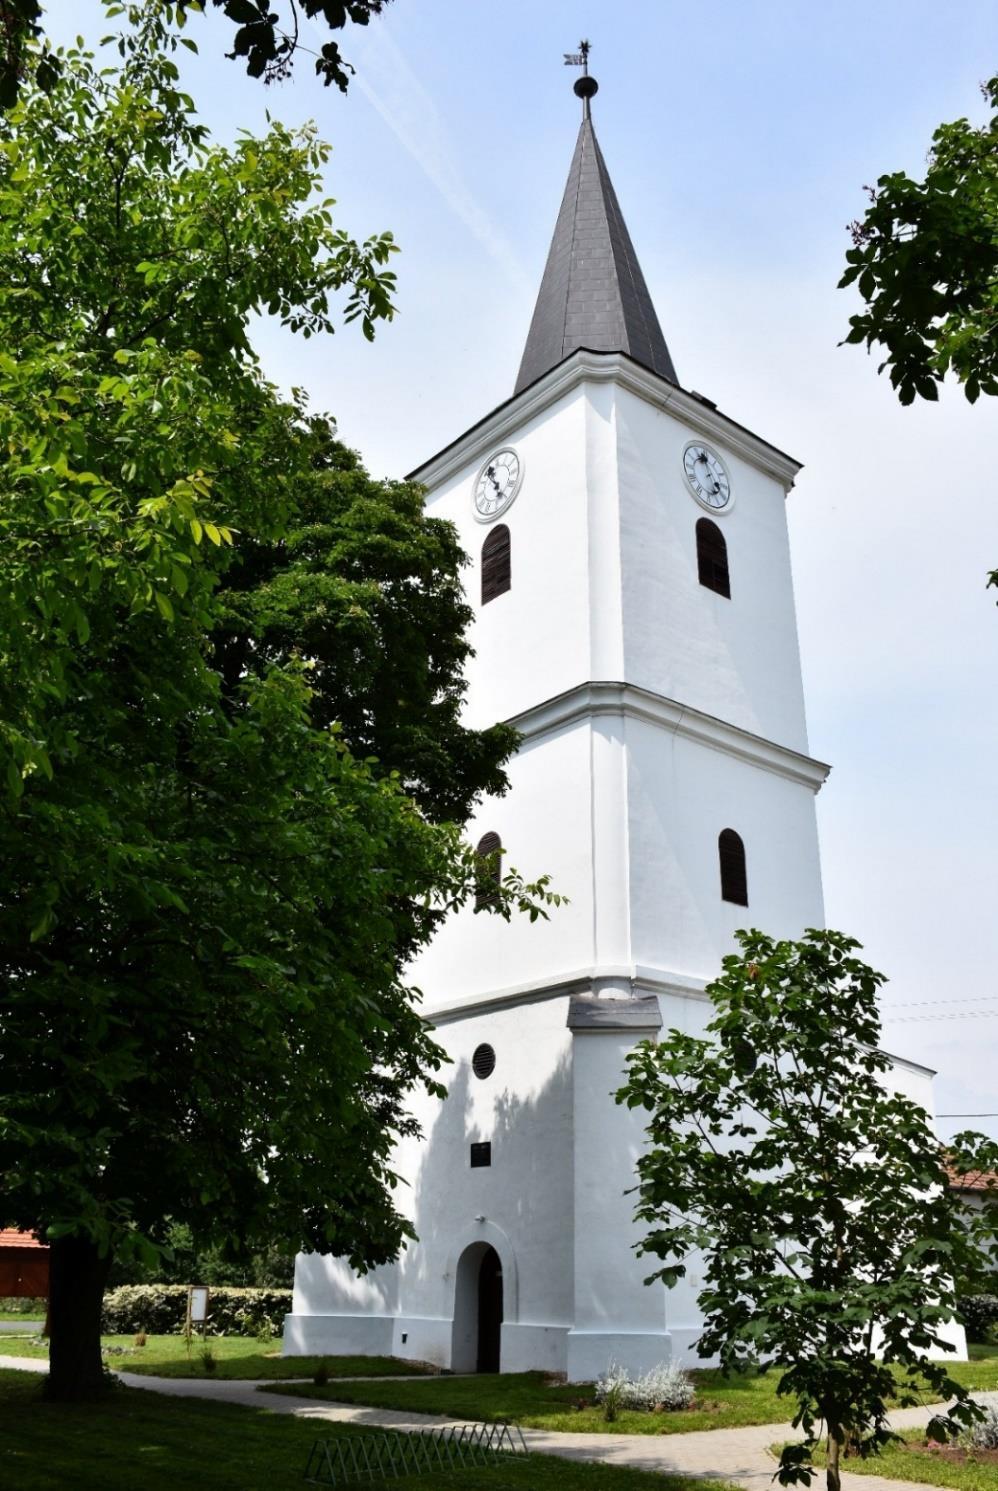 A műemlék református templom és a külön álló harangláb a település központjában a Hősök terén található. Tiszaroff árvízmentes szinten épült halmazfalu, tanyavilág nélkül.